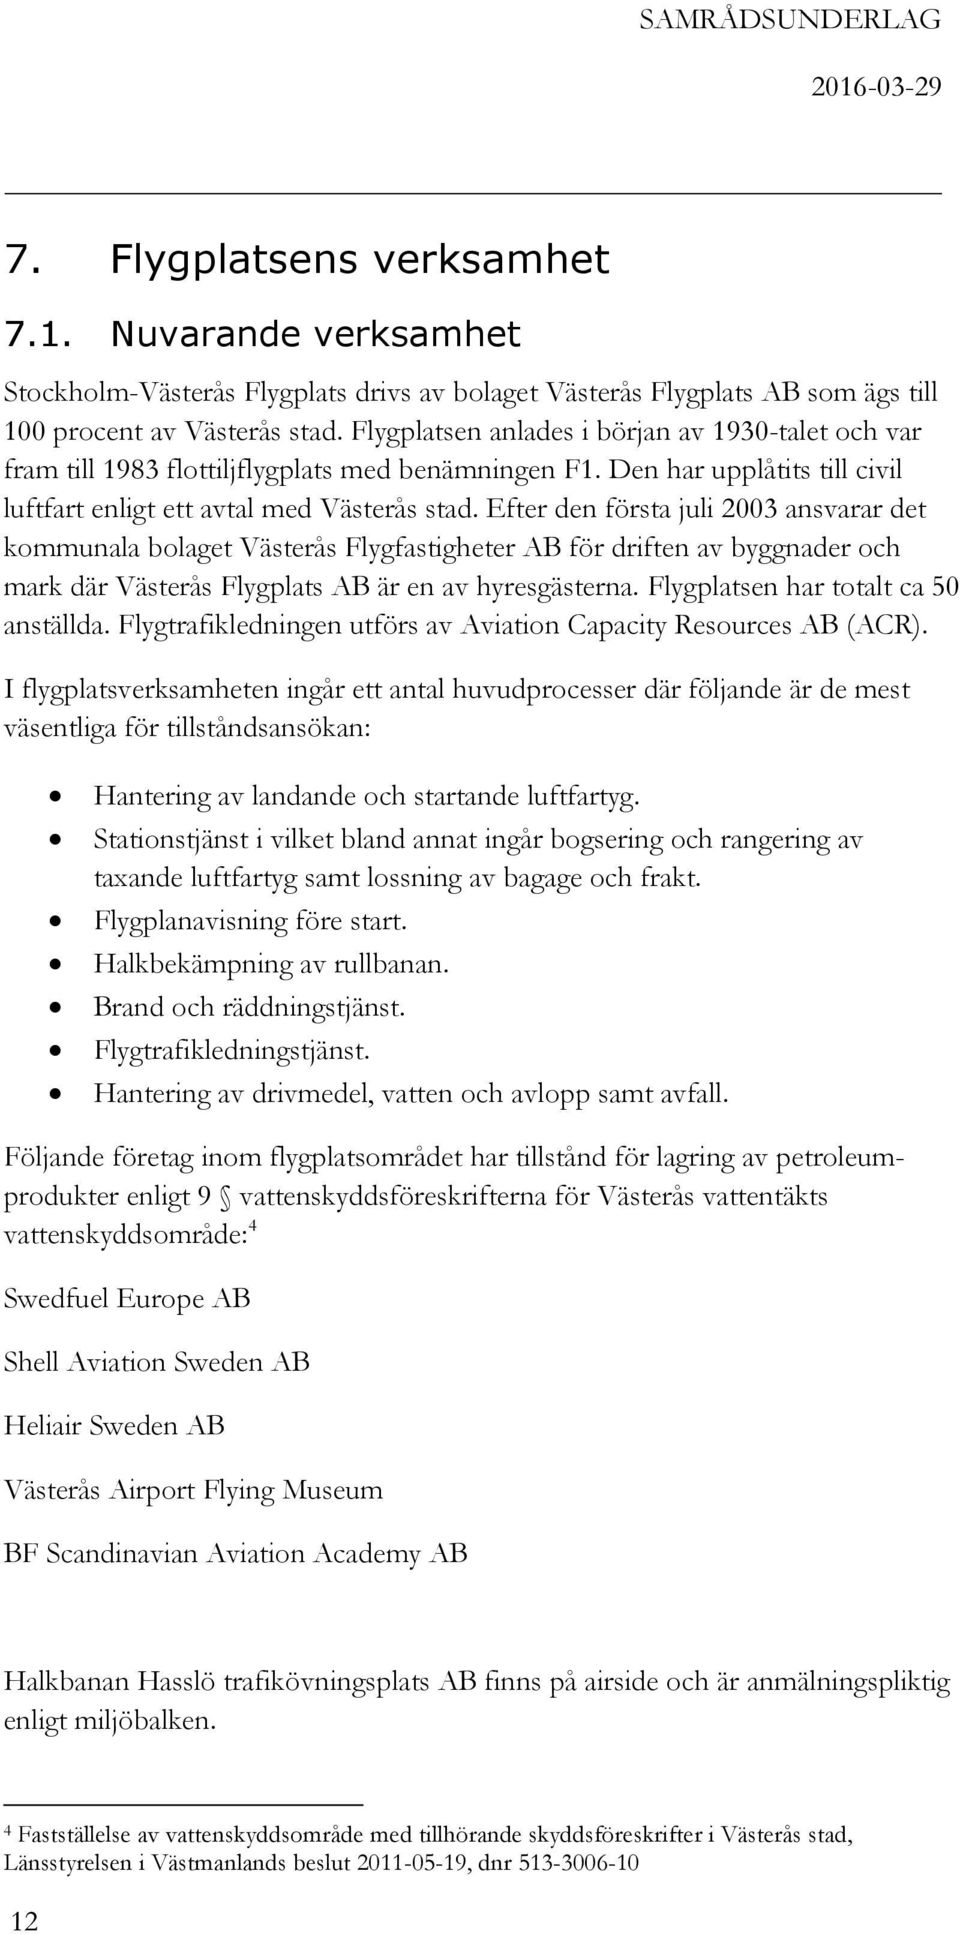 Efter den första juli 2003 ansvarar det kommunala bolaget Västerås Flygfastigheter AB för driften av byggnader och mark där Västerås Flygplats AB är en av hyresgästerna.